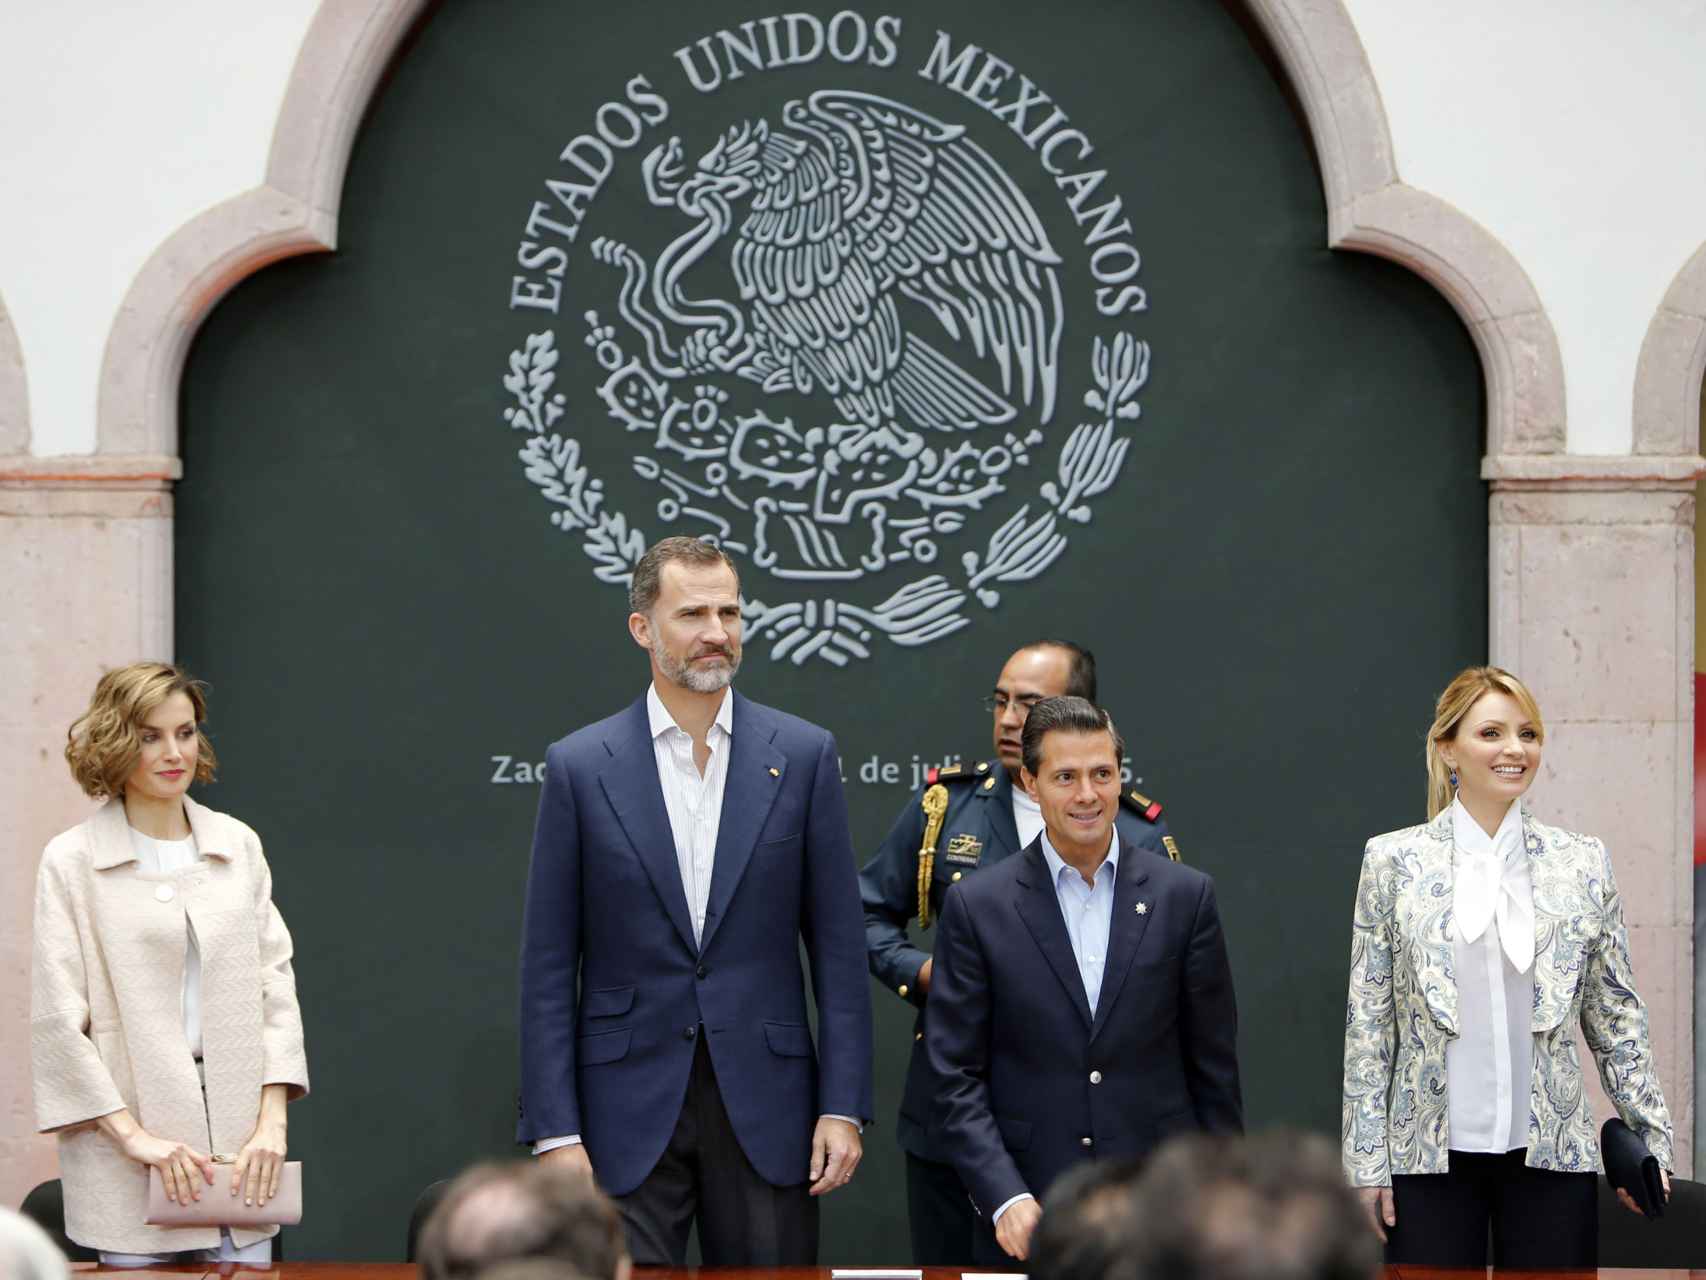 Los reyes junto al presidente de México y su esposa en Zacatecas el 1 de julio de 2015.